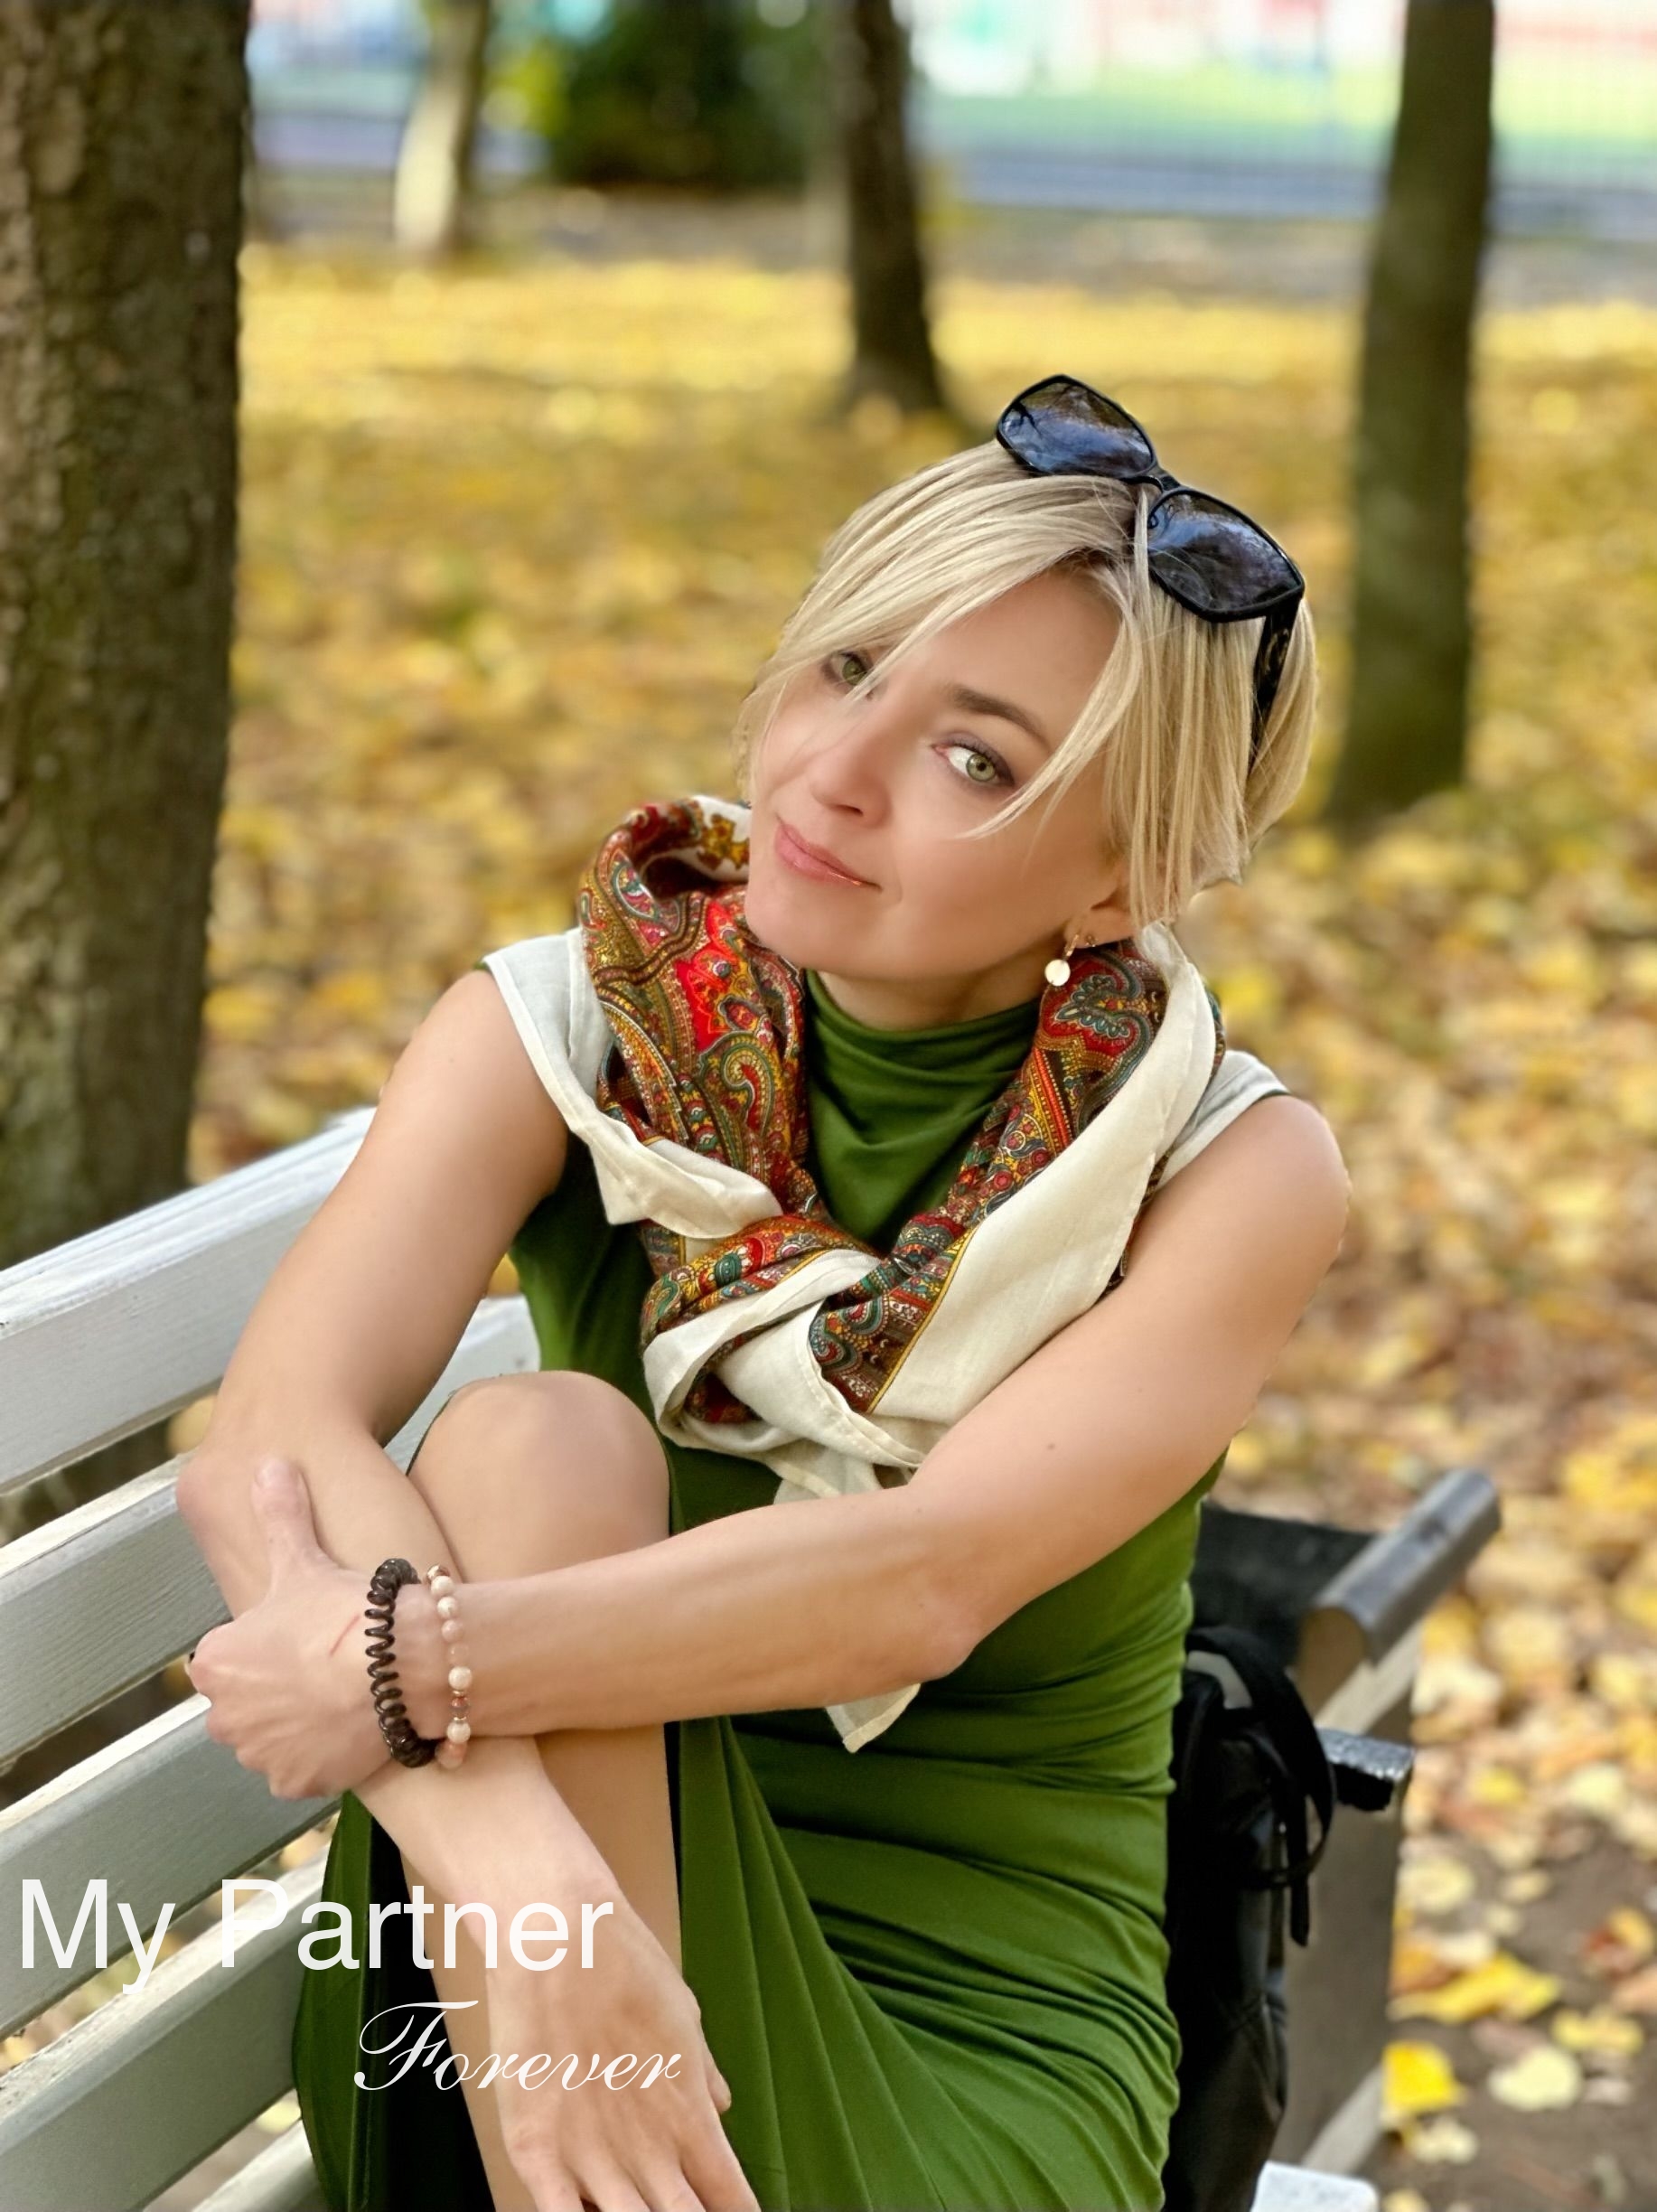 Beautiful Woman from Ukraine - Nadezhda from Vinnitsa, Ukraine